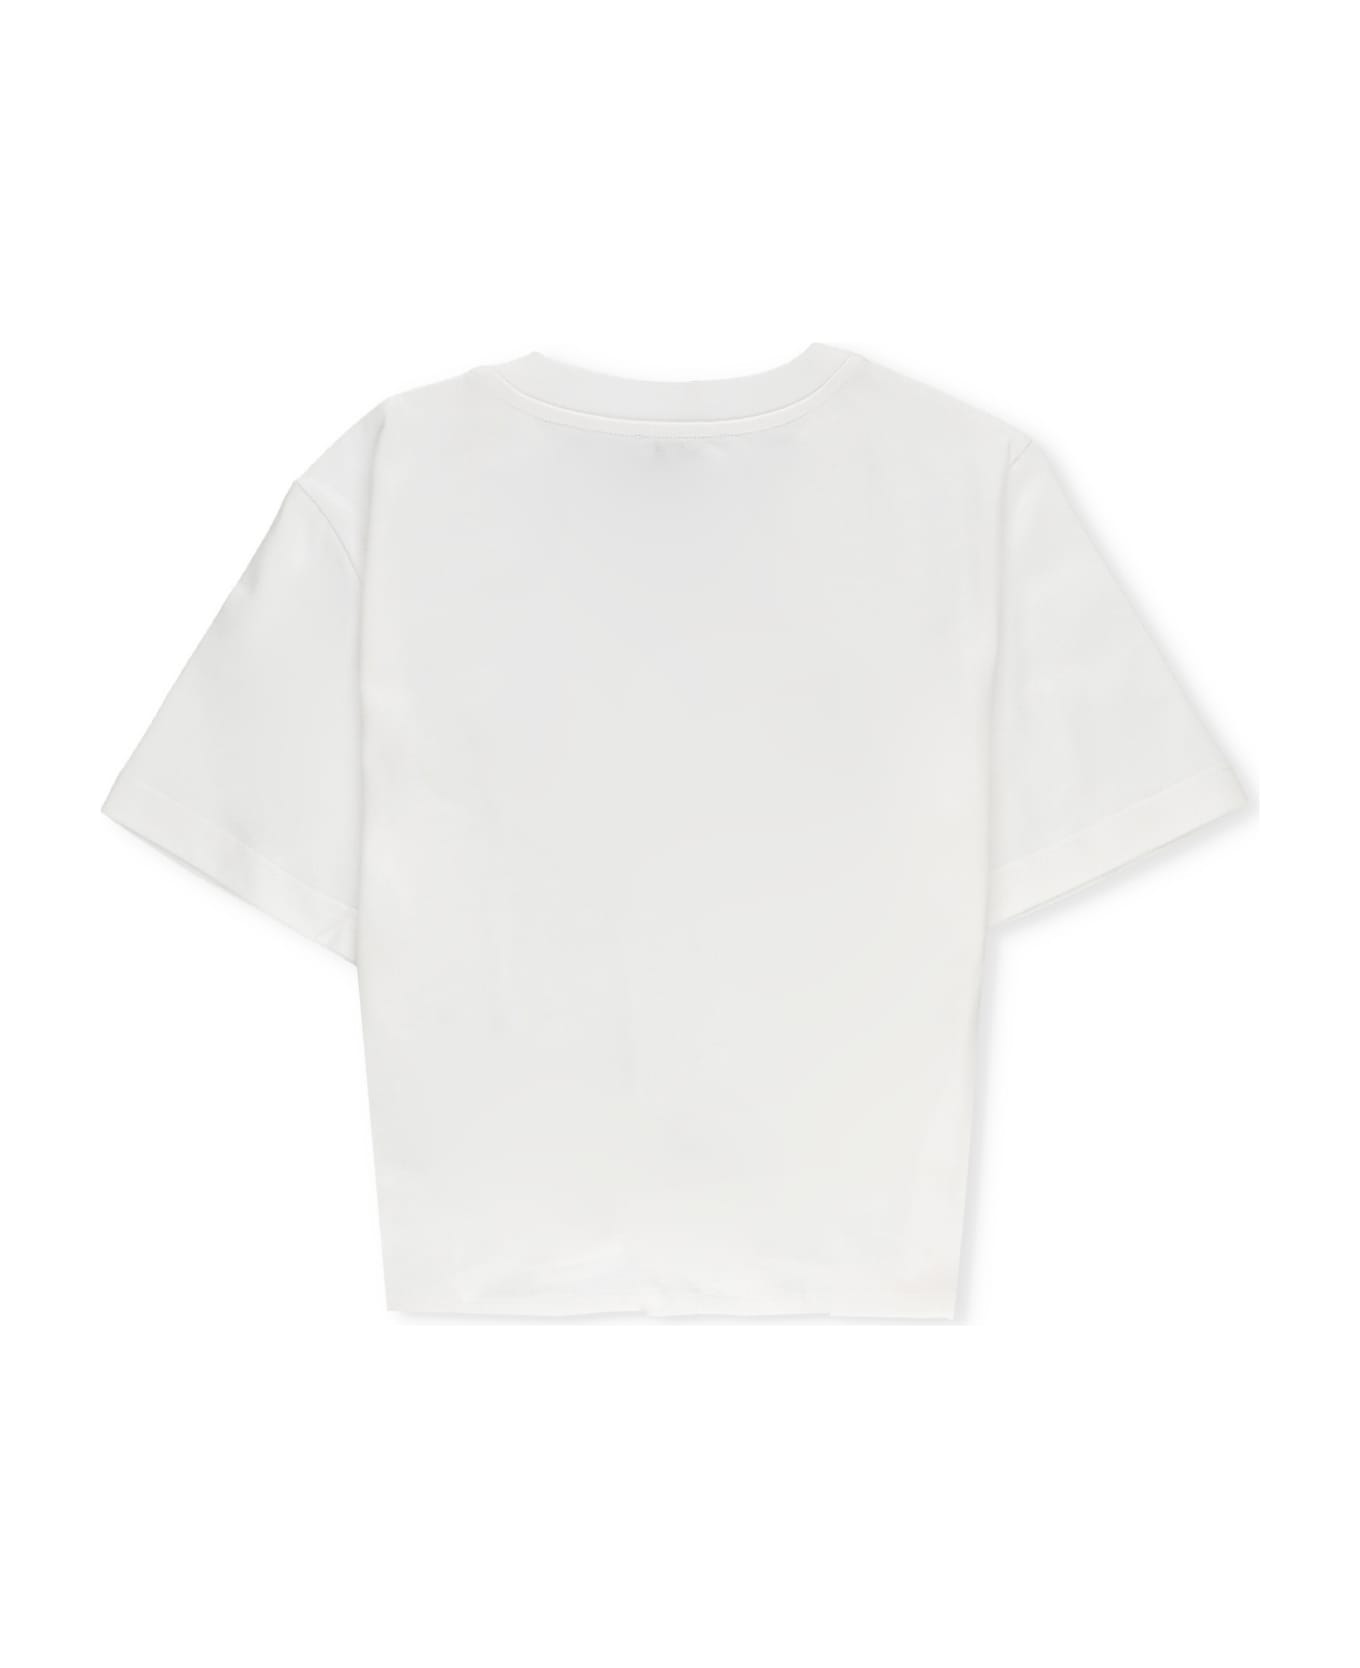 Dolce & Gabbana T-shirt With Logo